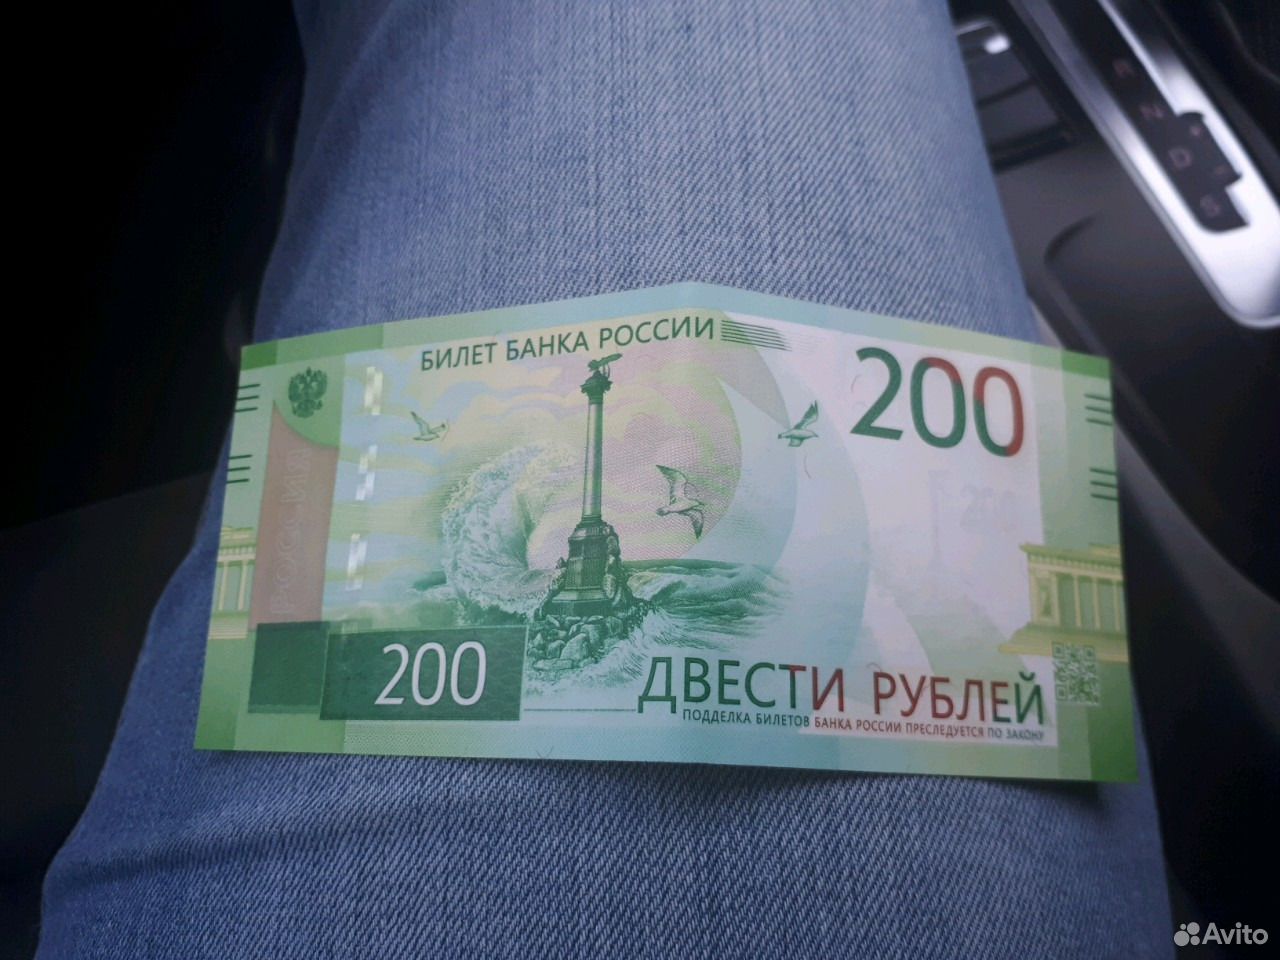 Материал 200 рублей. 200 Рублей. Банкнота 200. Купюра 200 рублей. 200 Рублей банкнота.